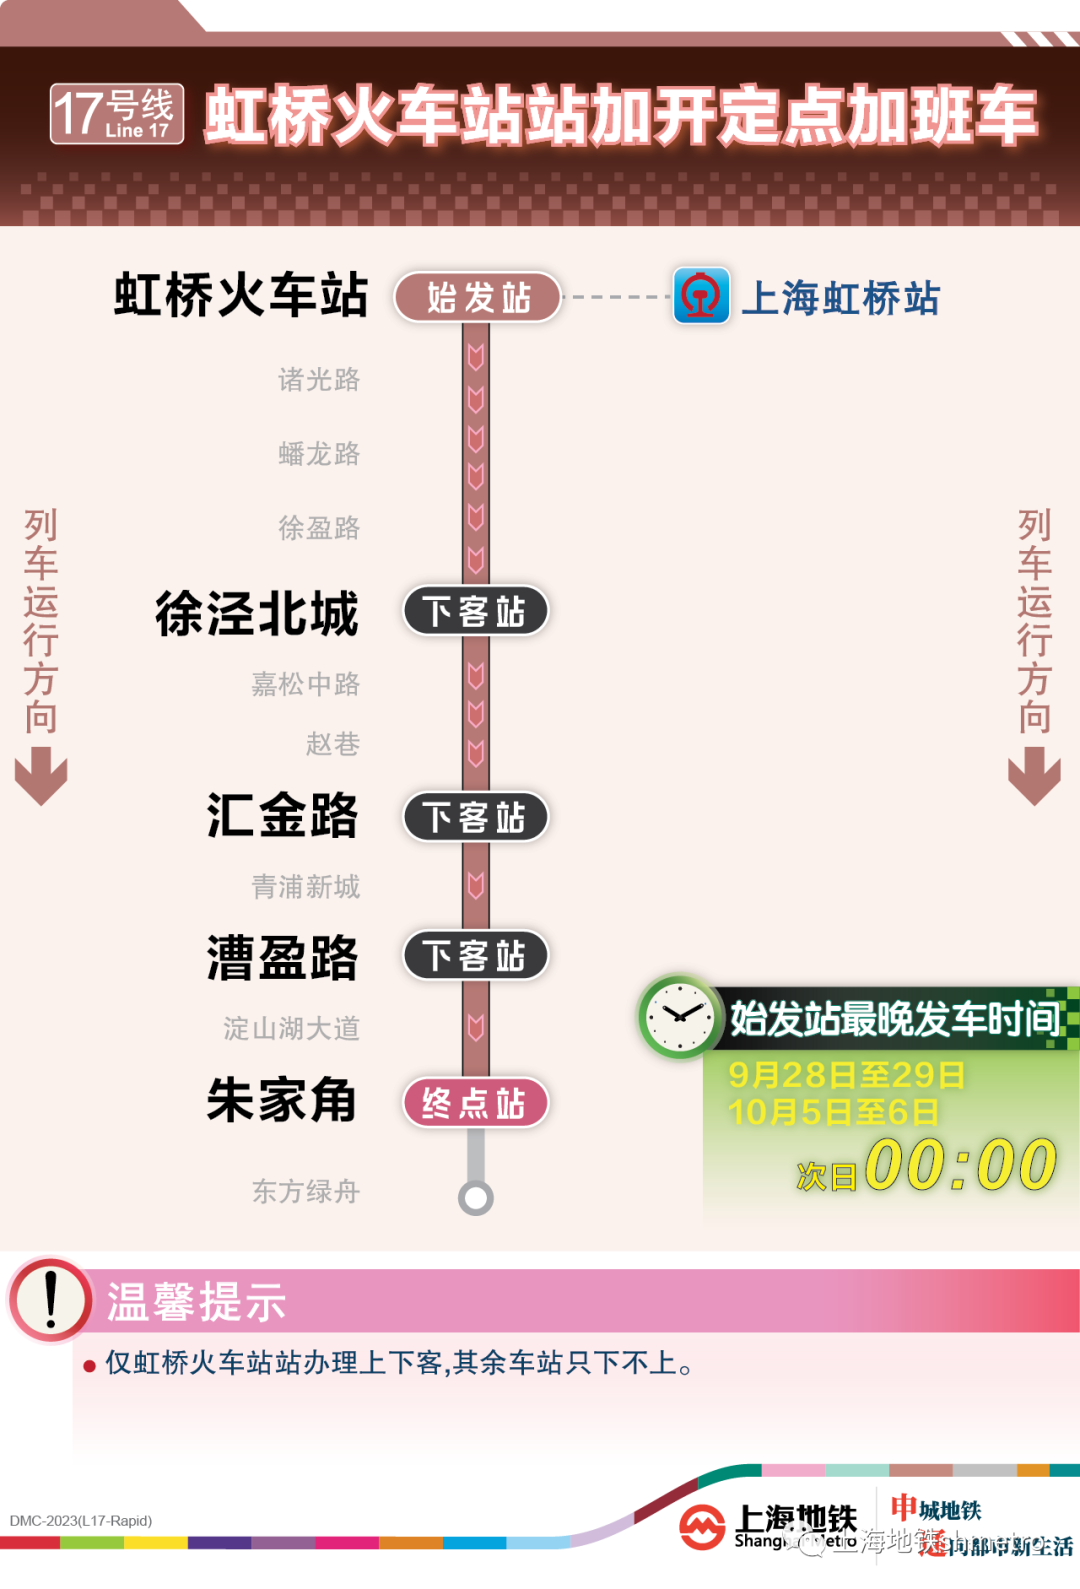 本文综合自：上海地铁